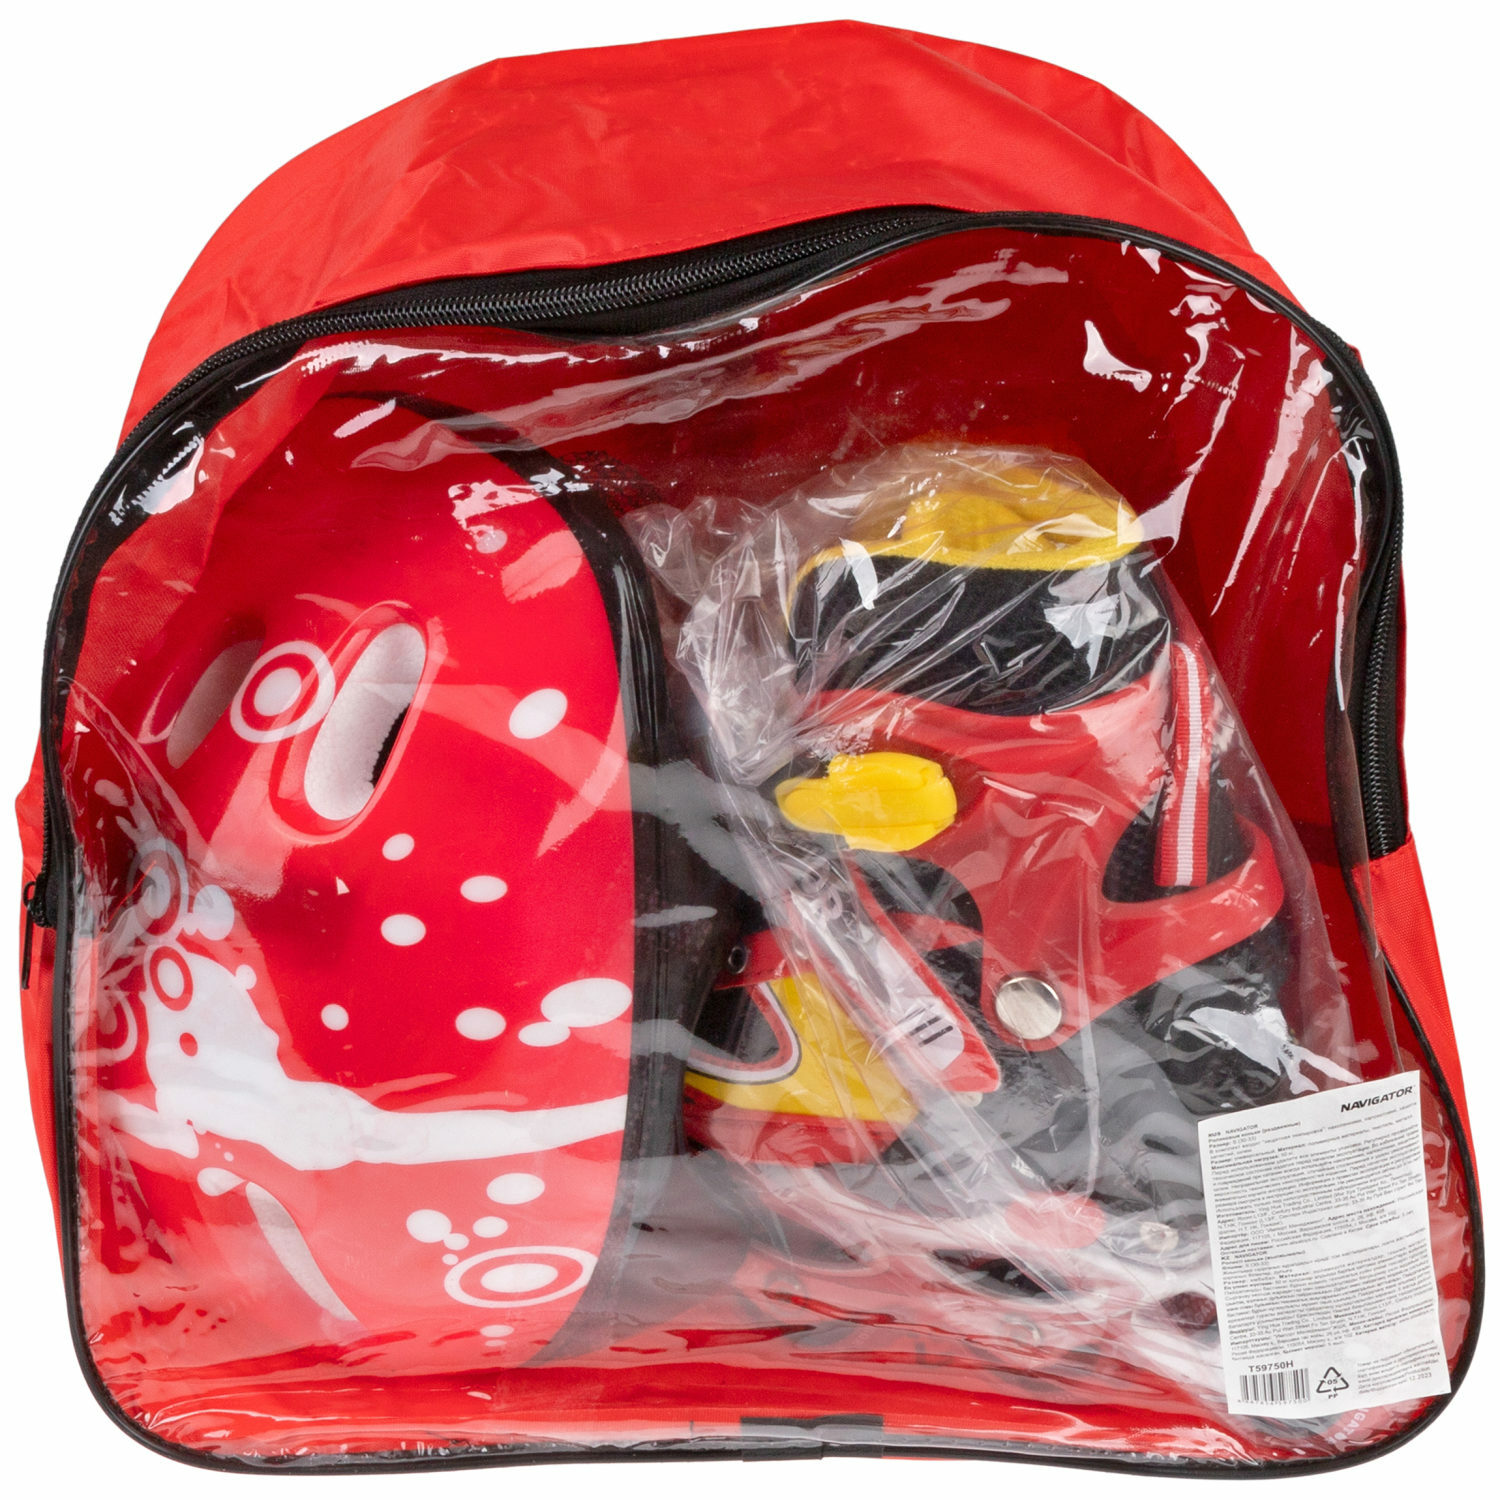 Ролики Navigator детские раздвижные 30 - 33 размер с защитой и шлемом красный - фото 20